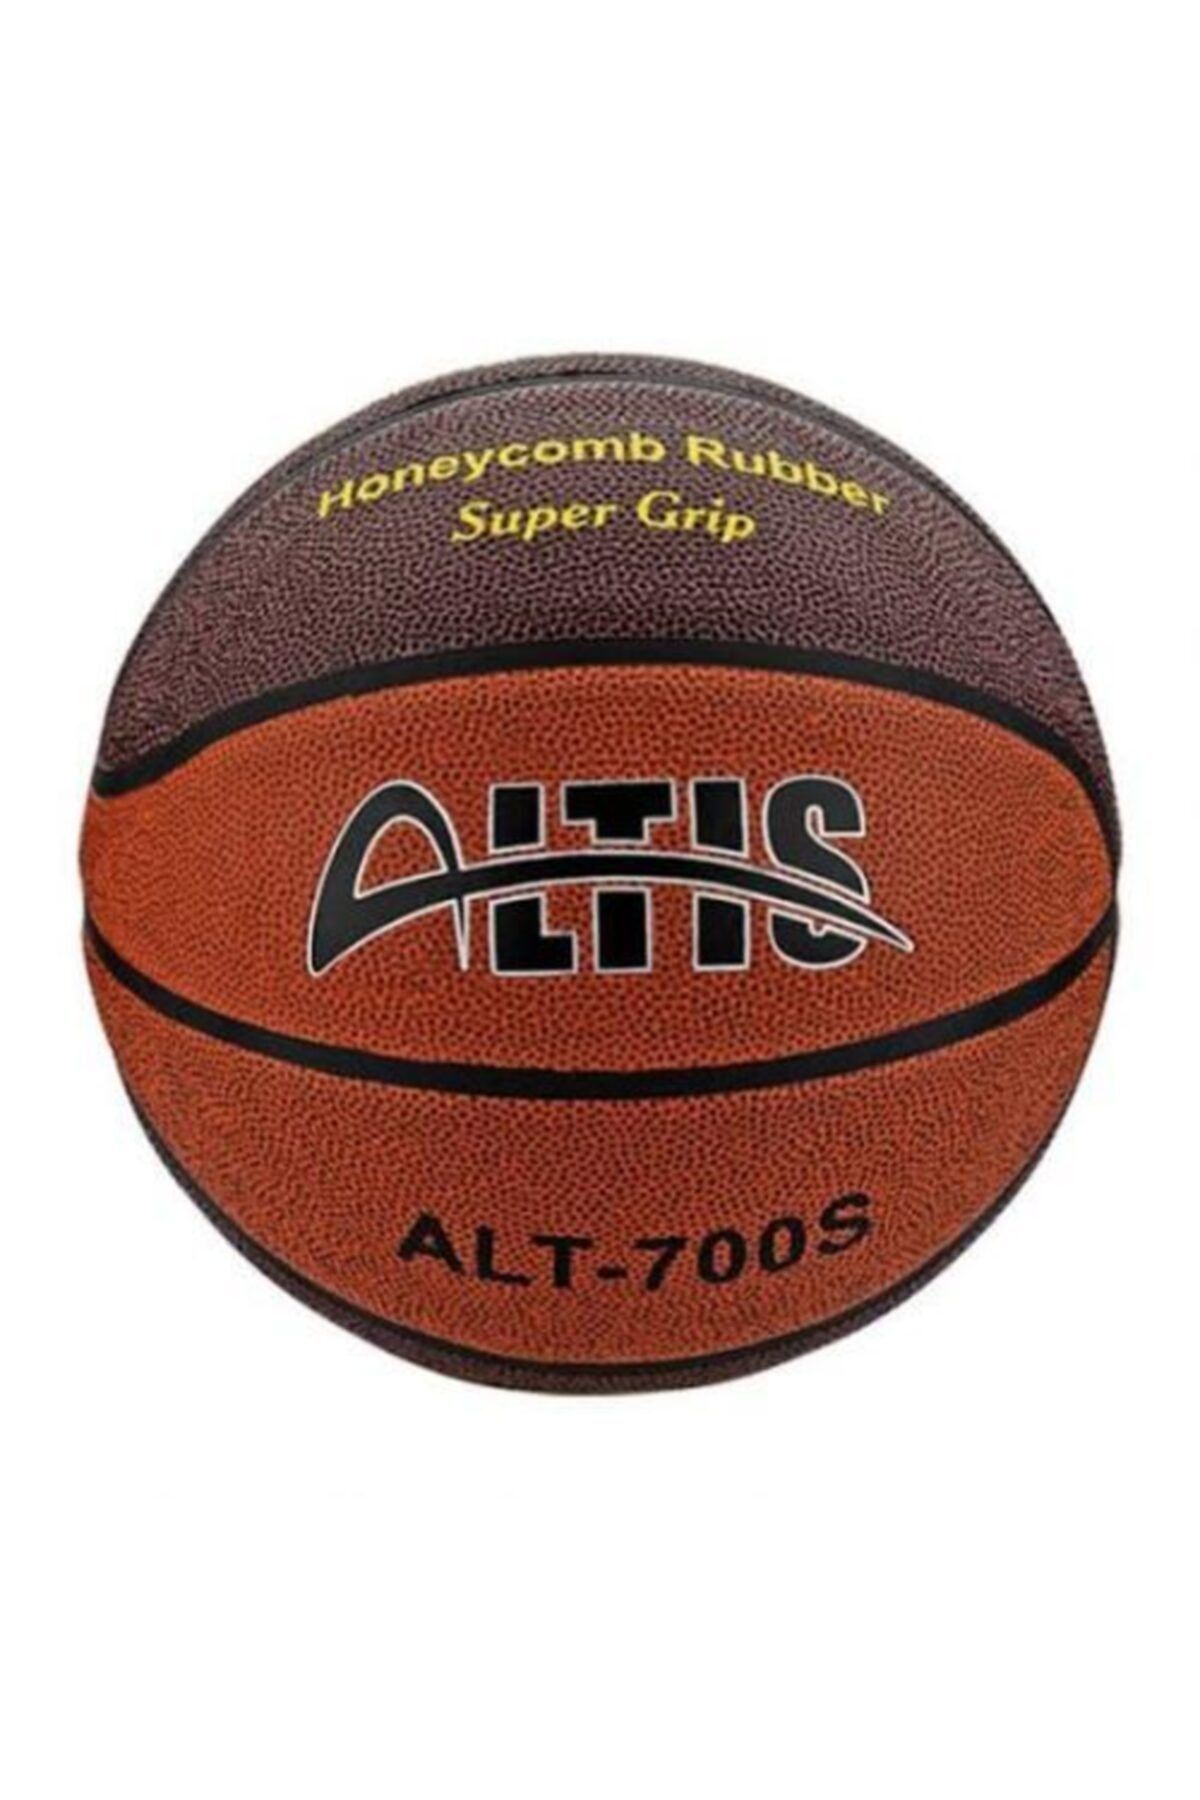 ALTIS Alt-700s Basketbol Topu 7 Numara